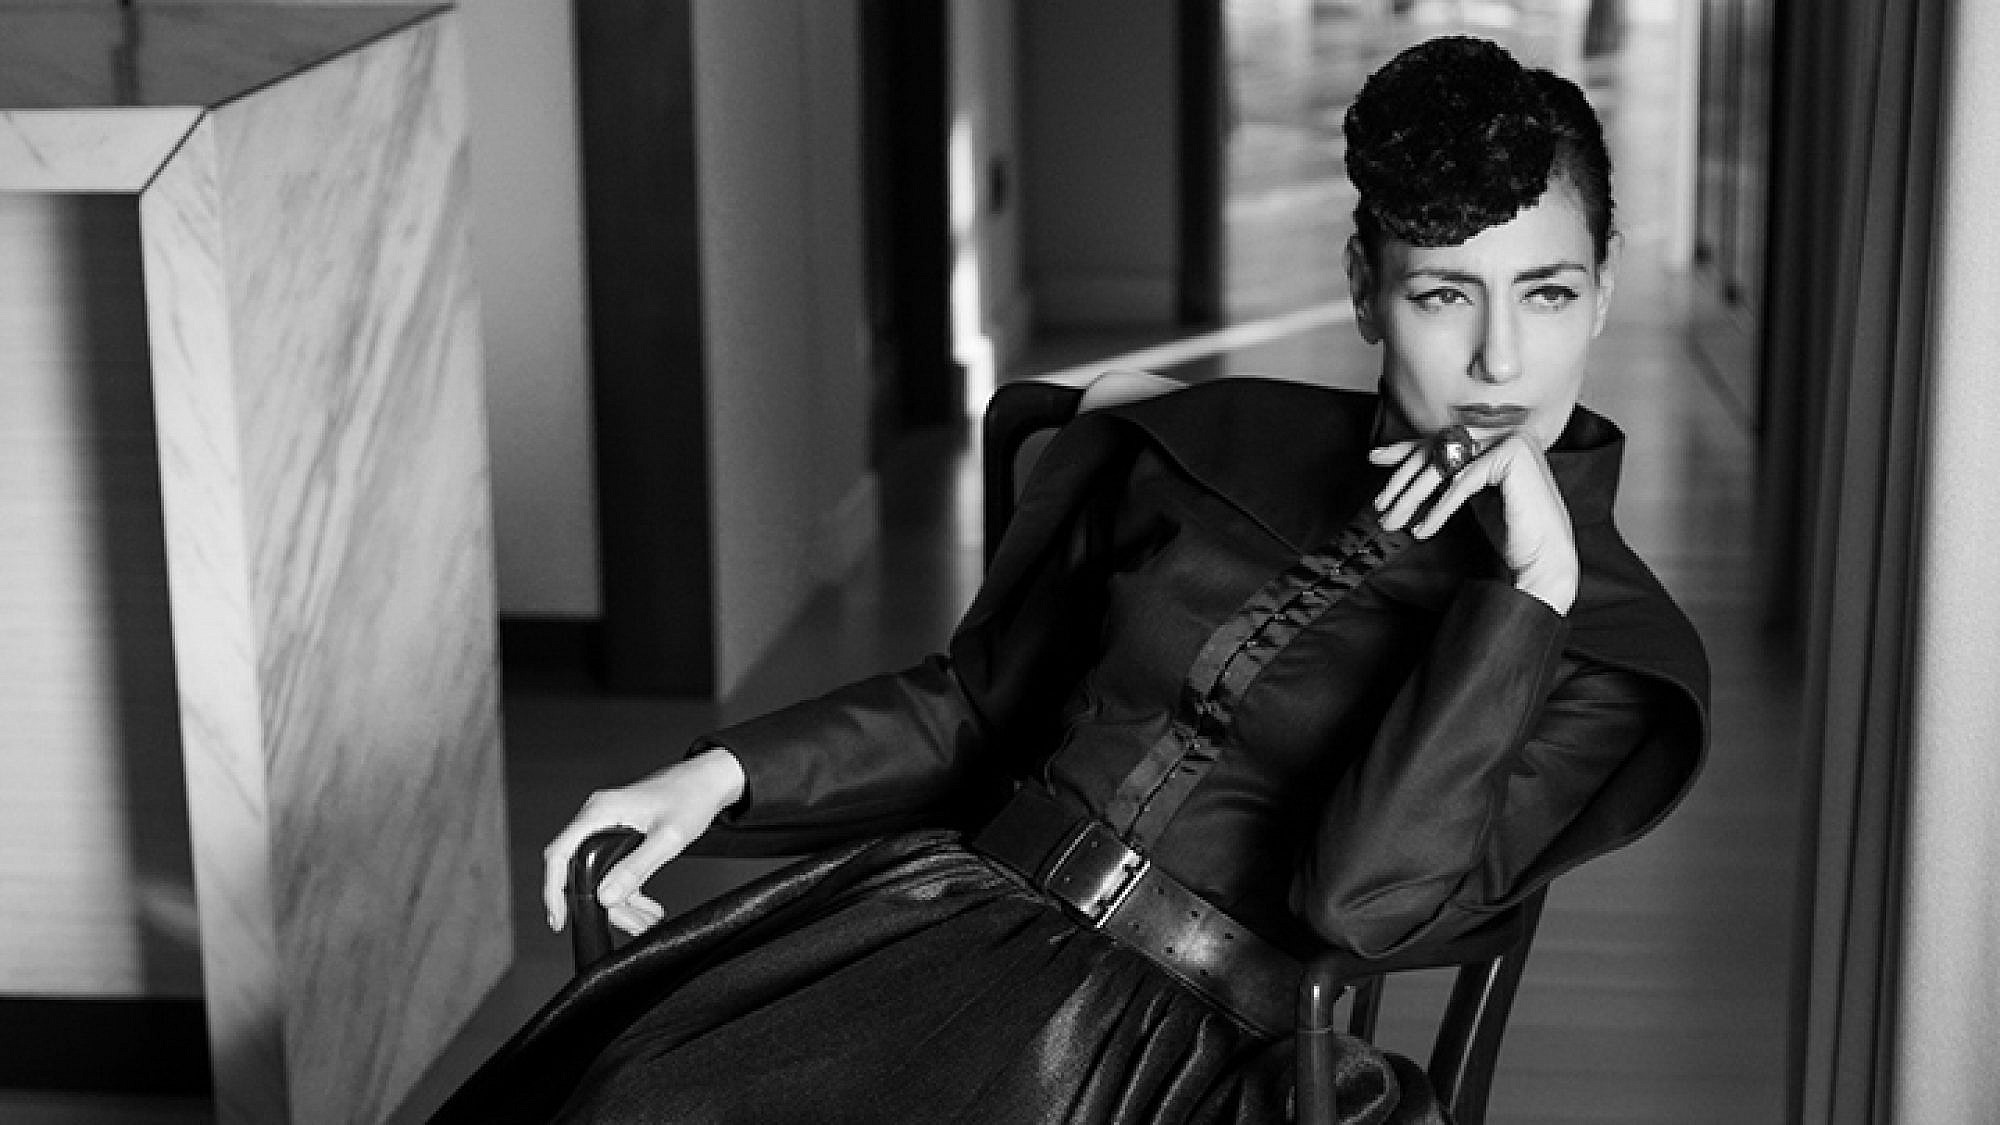 רונית אלקבץ מתוך "שנסון לשמלה השחורה", מחווה לזמרת אידית פיאף | צילום: מיטל ווינברג